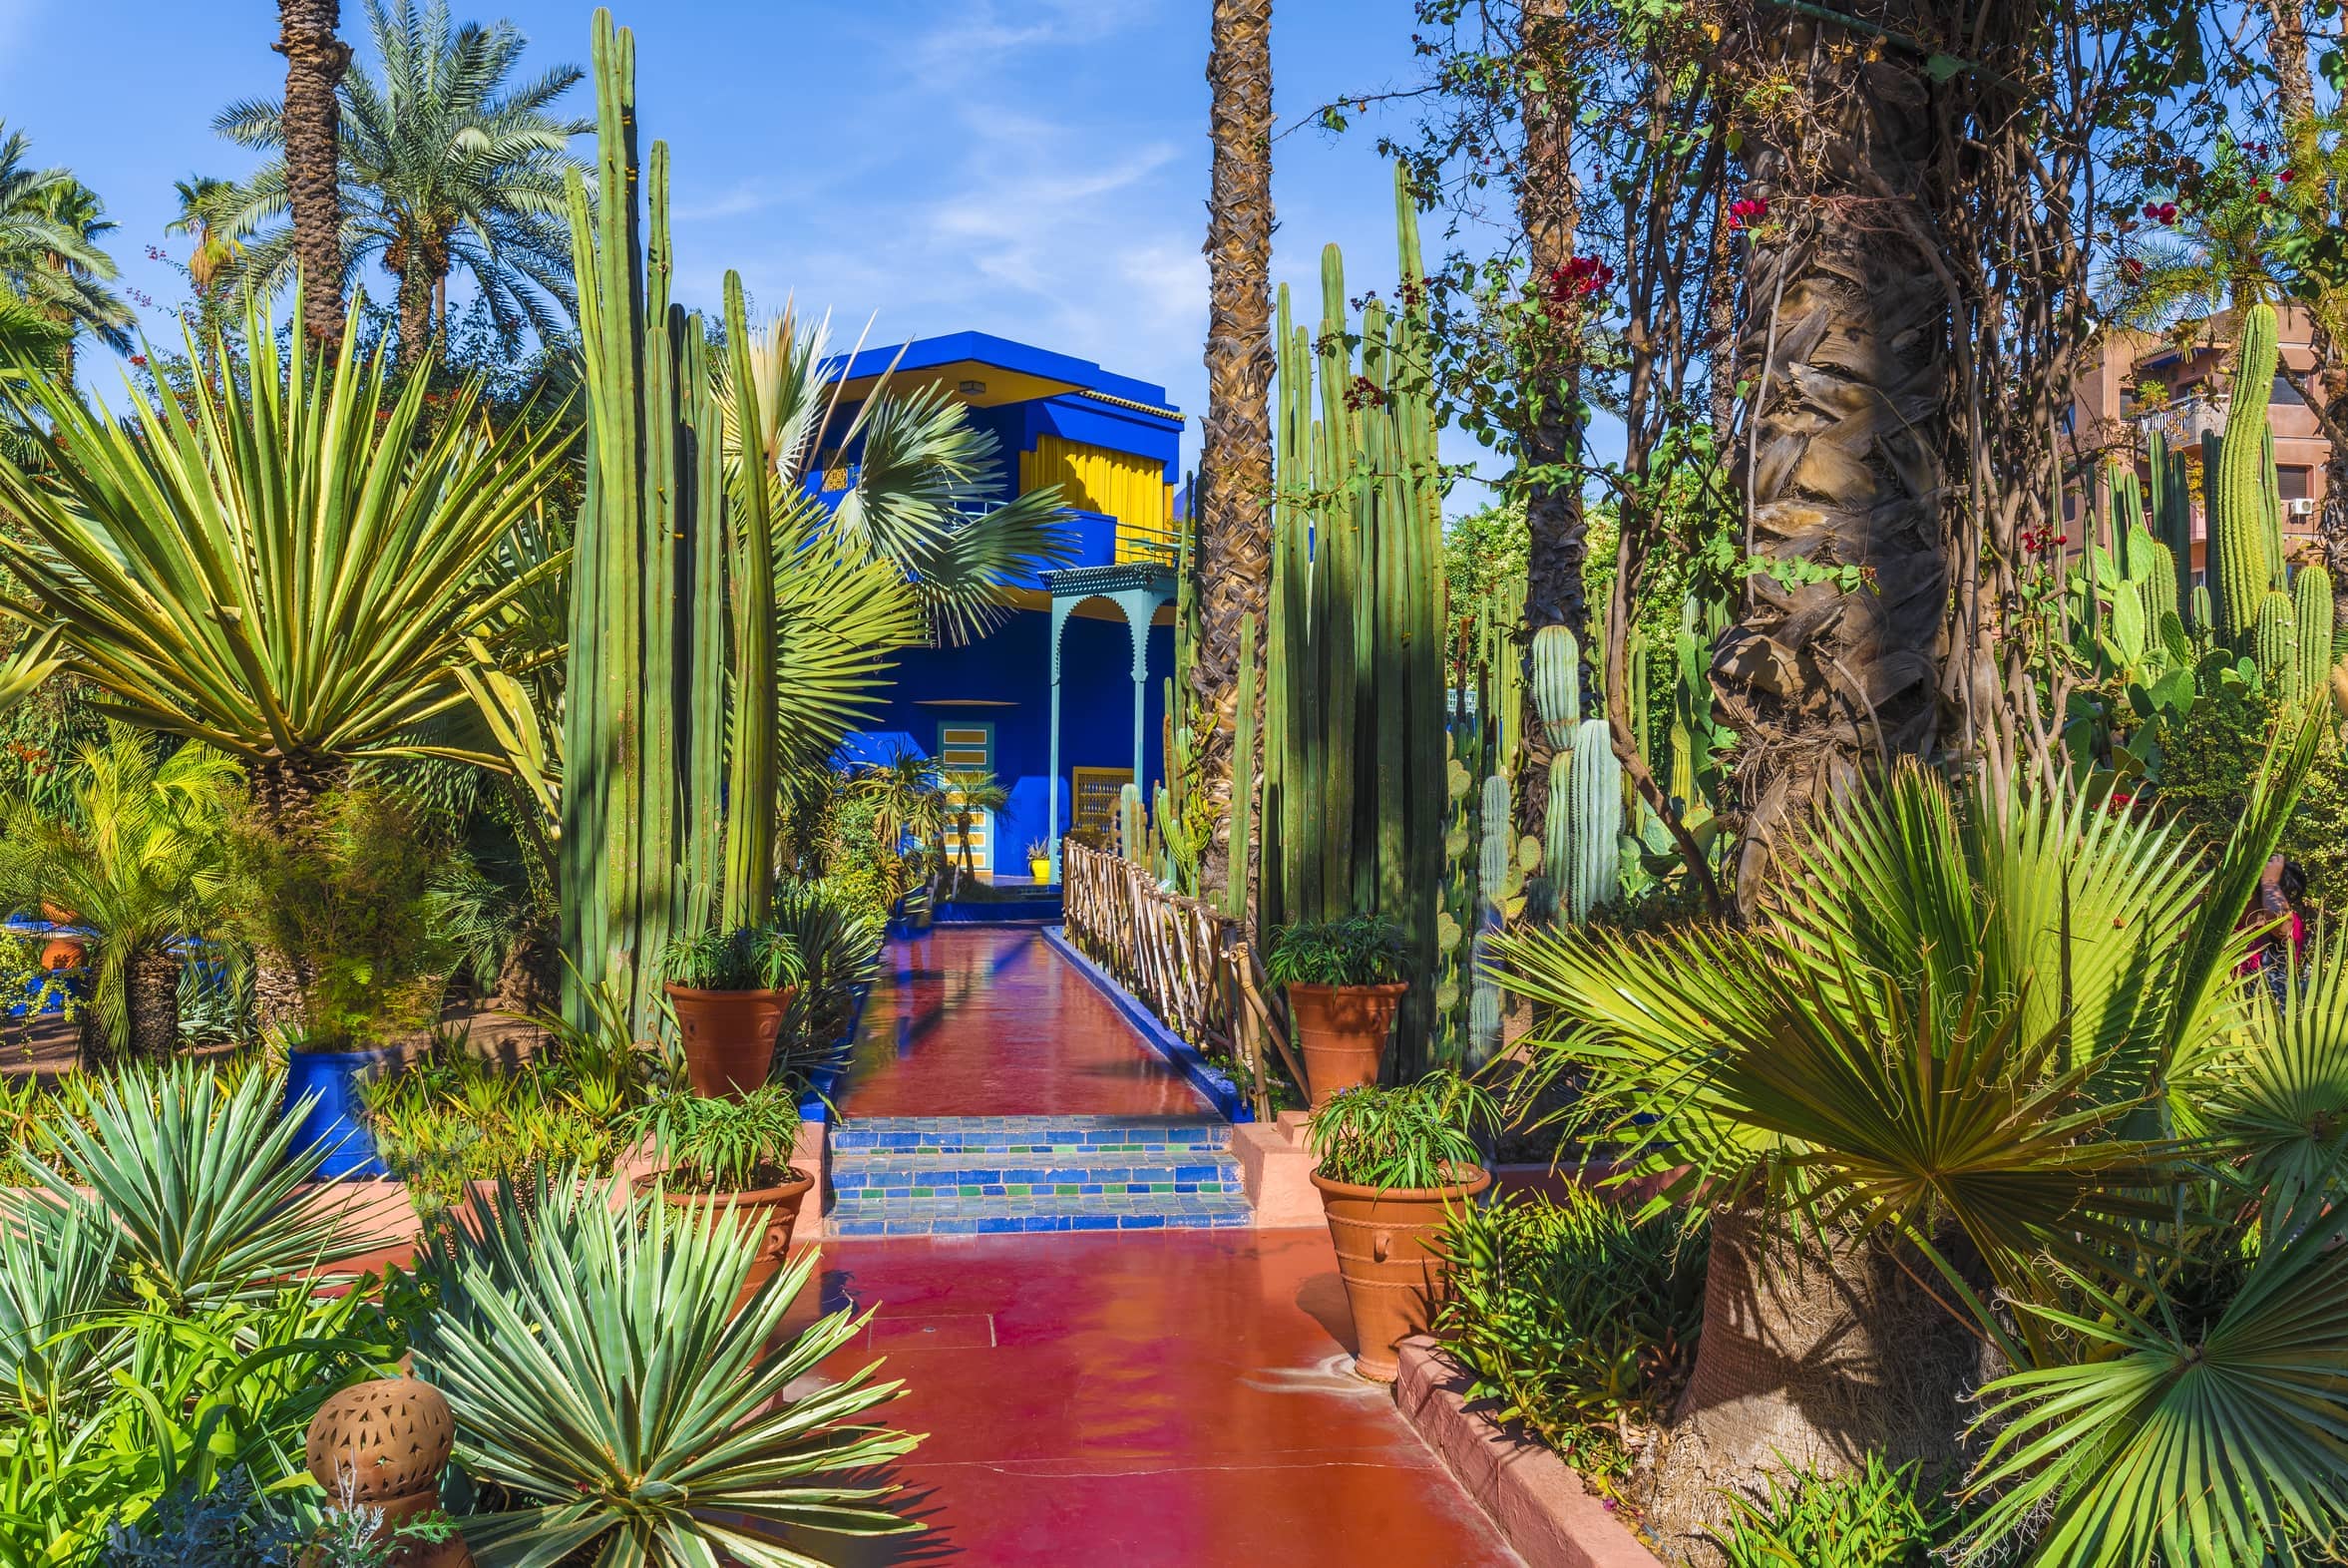 Le Jardin Majorelle, amazing tropical garden in Marrakech, Morocco.